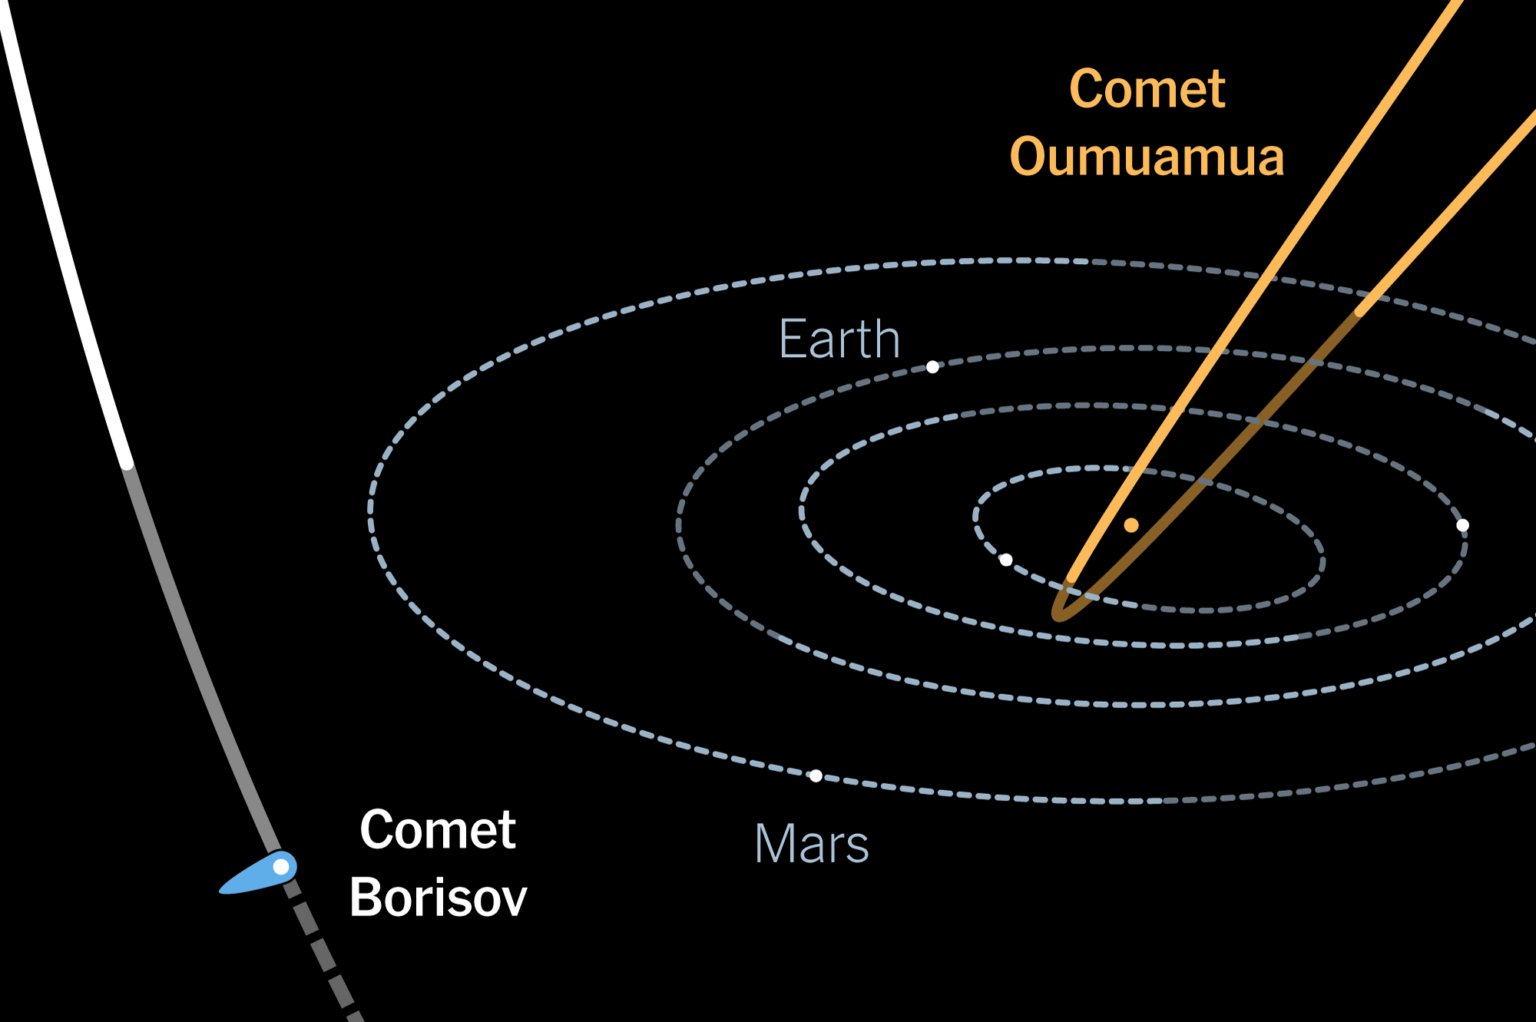 Комета понса брукса траектория. Комета Омуамуа. Оумуамуа астероид. Оумуамуа Траектория полета. Межзвездный астероид Оумуамуа.